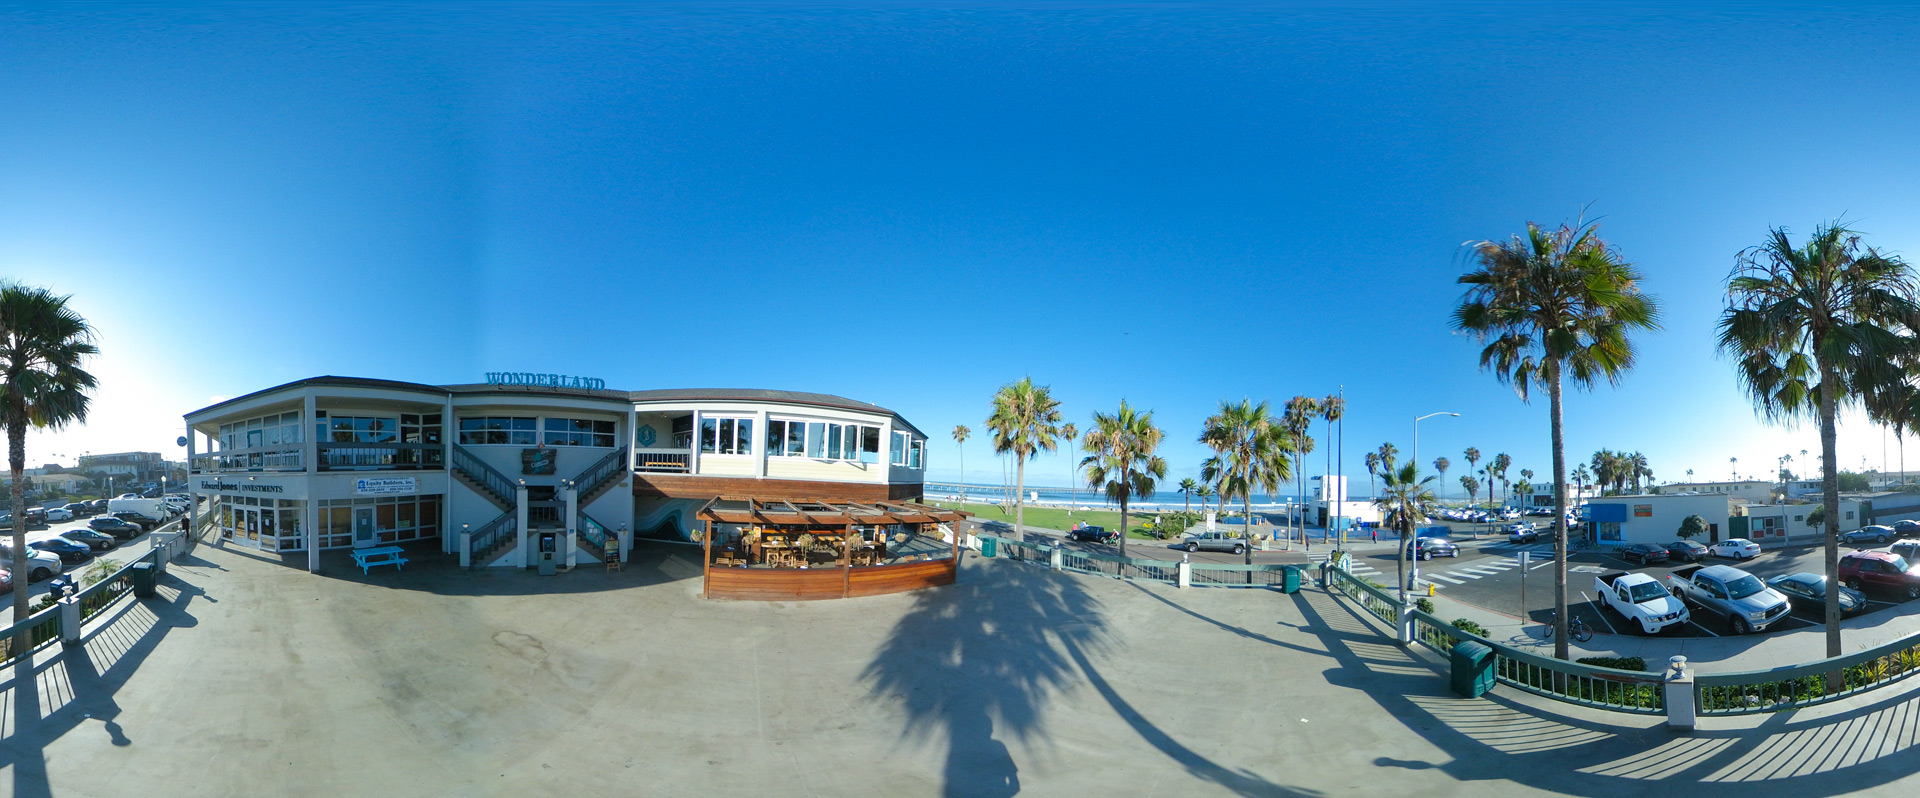 Ocean Beach, San Diego - Sunset Plaza